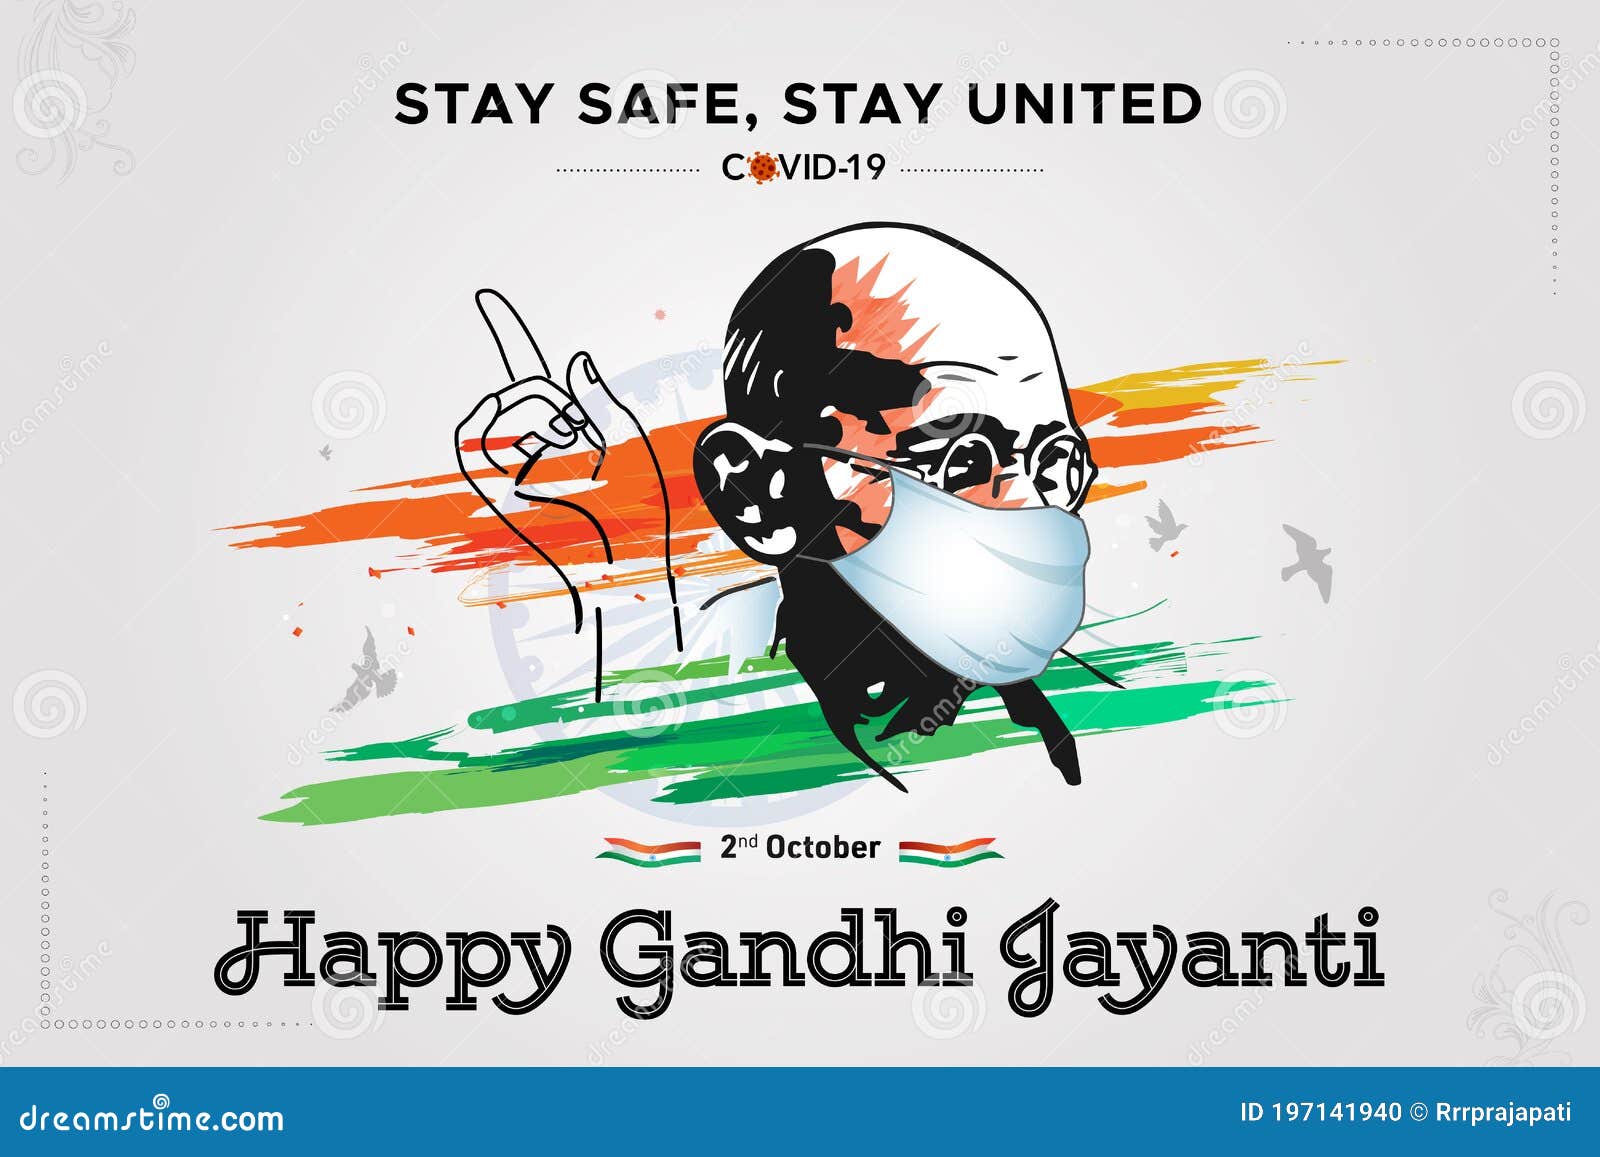 Vector Illustration of Mahatma Gandhi Jayanti (Birthday) Stock ...